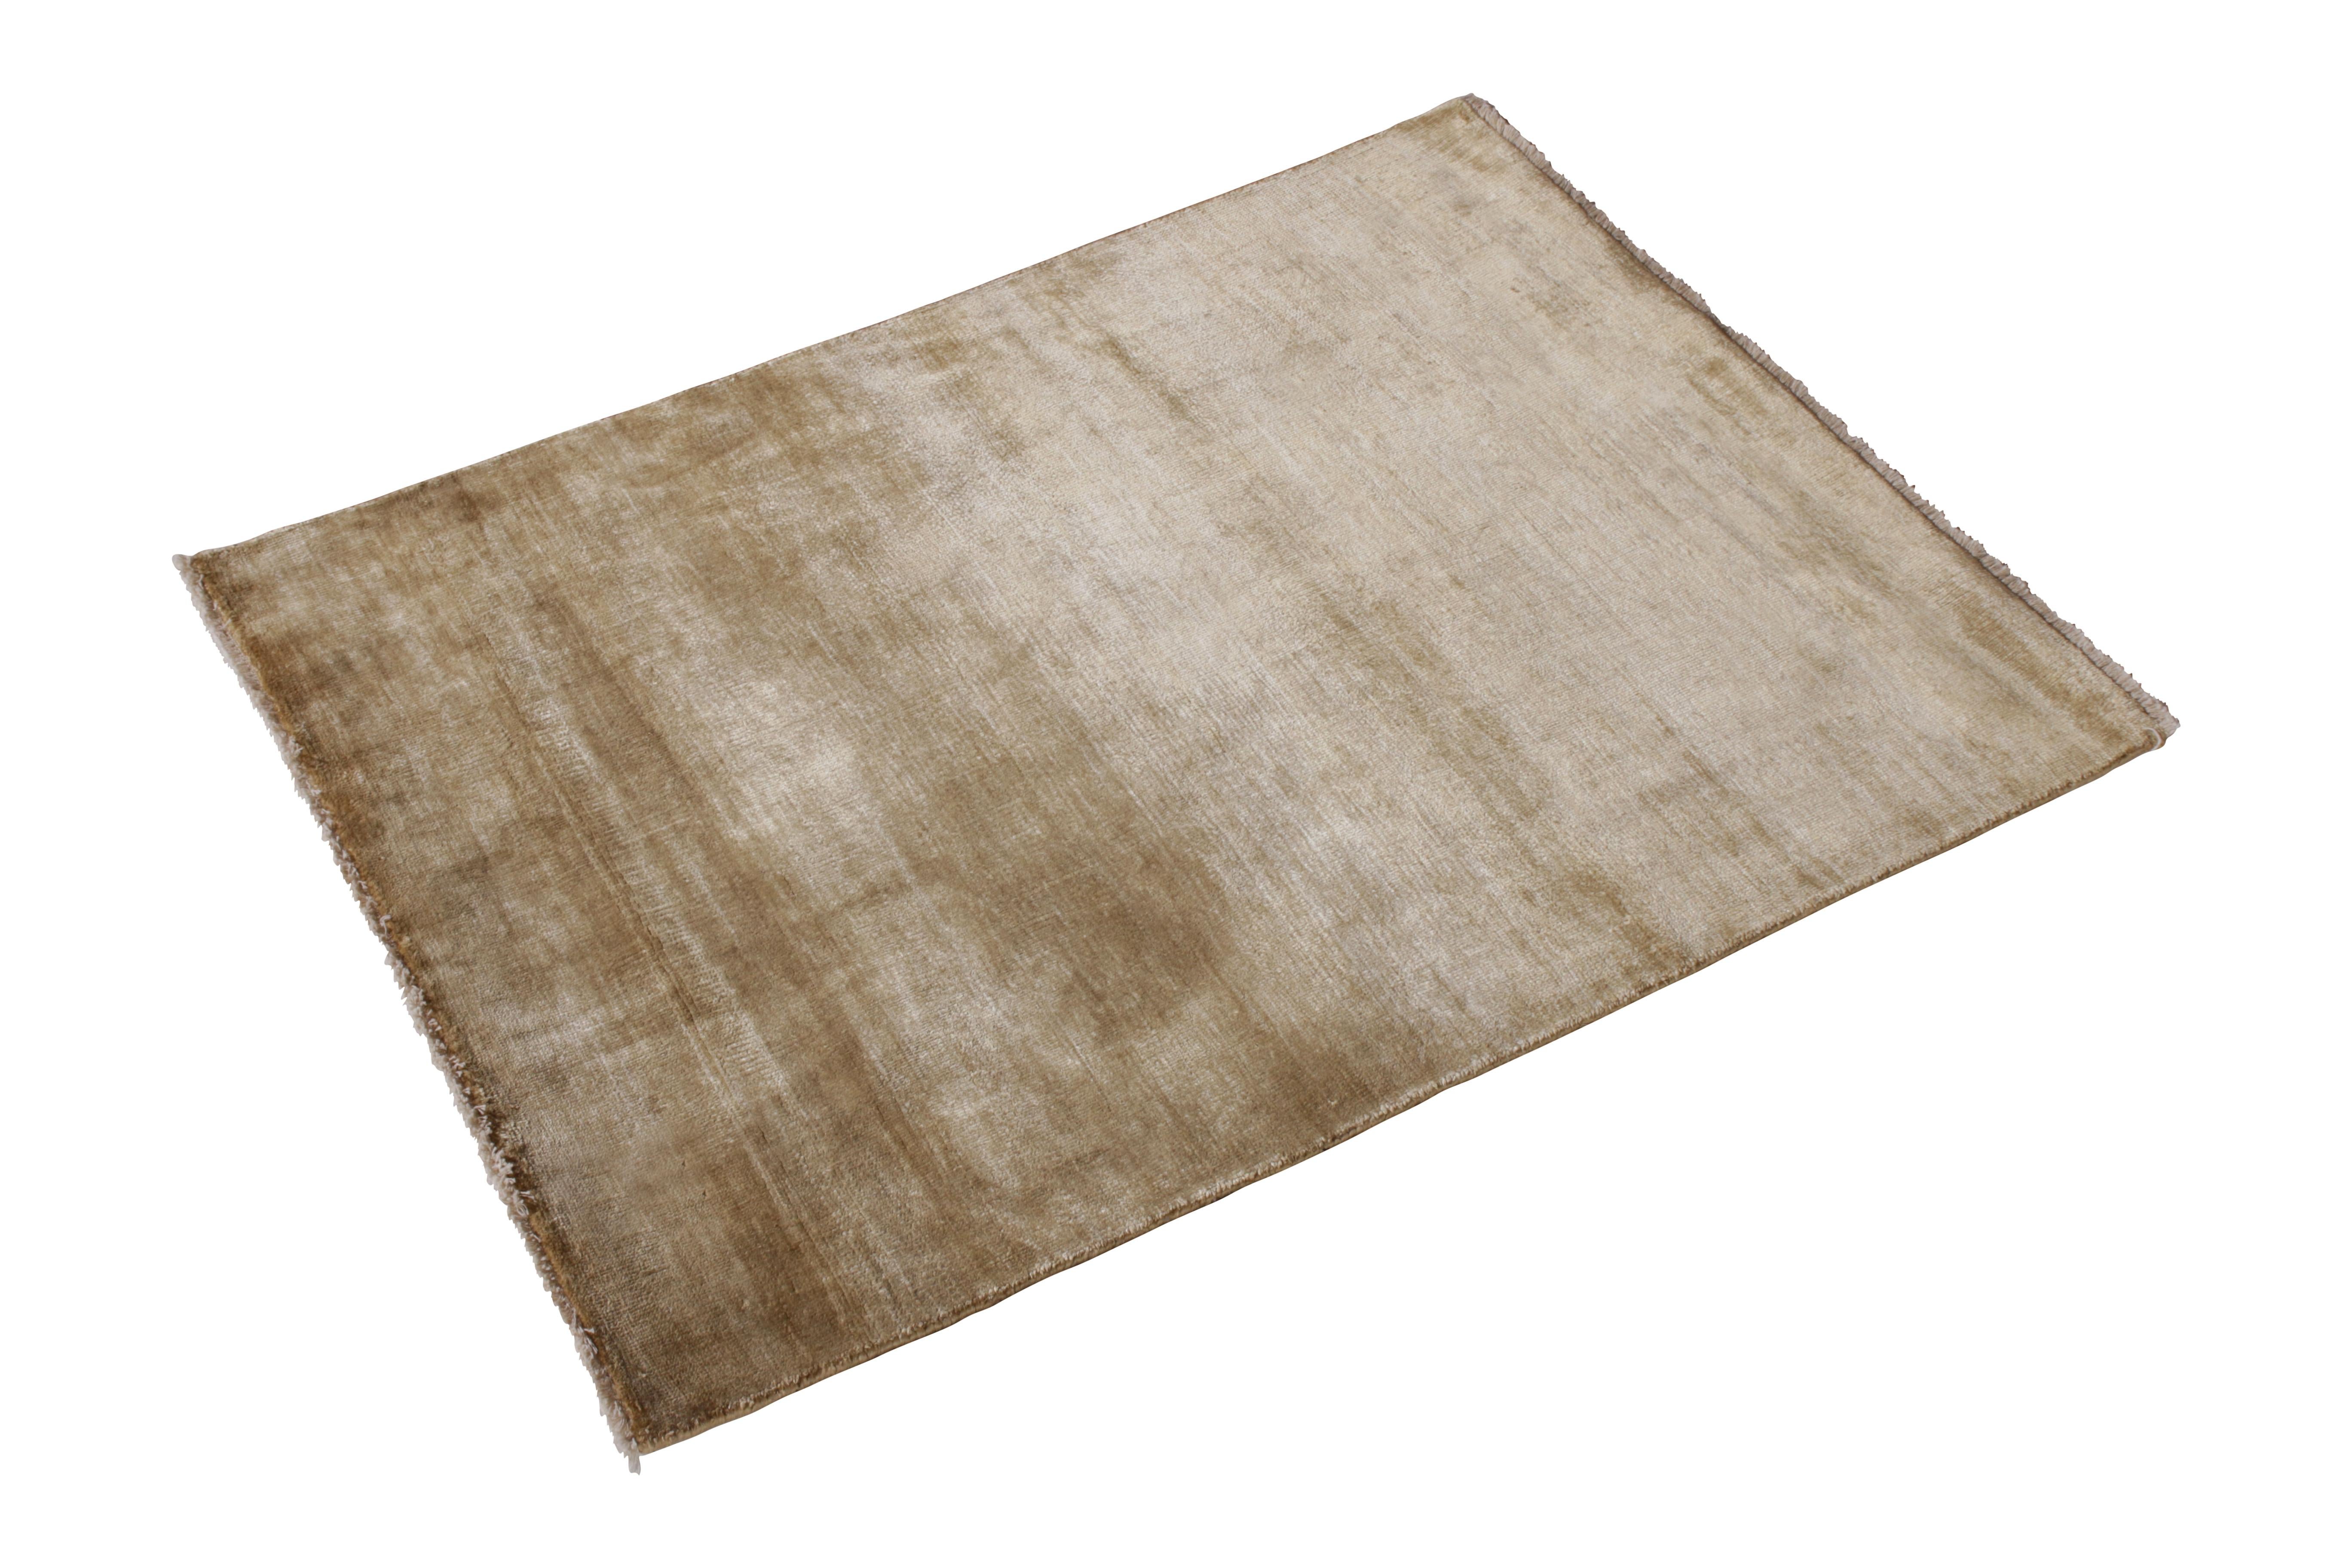 Contemporary-Teppich in Beige Brown Open Field von Rug & Kilim 
Beschreibung: Dieser 2'8x3'3 große zeitgenössische Teppich aus der Texture of Color Collection'S von Rug & Kilim ist mit einer Mischung aus Natur- und Sari-Seide handgeknüpft und